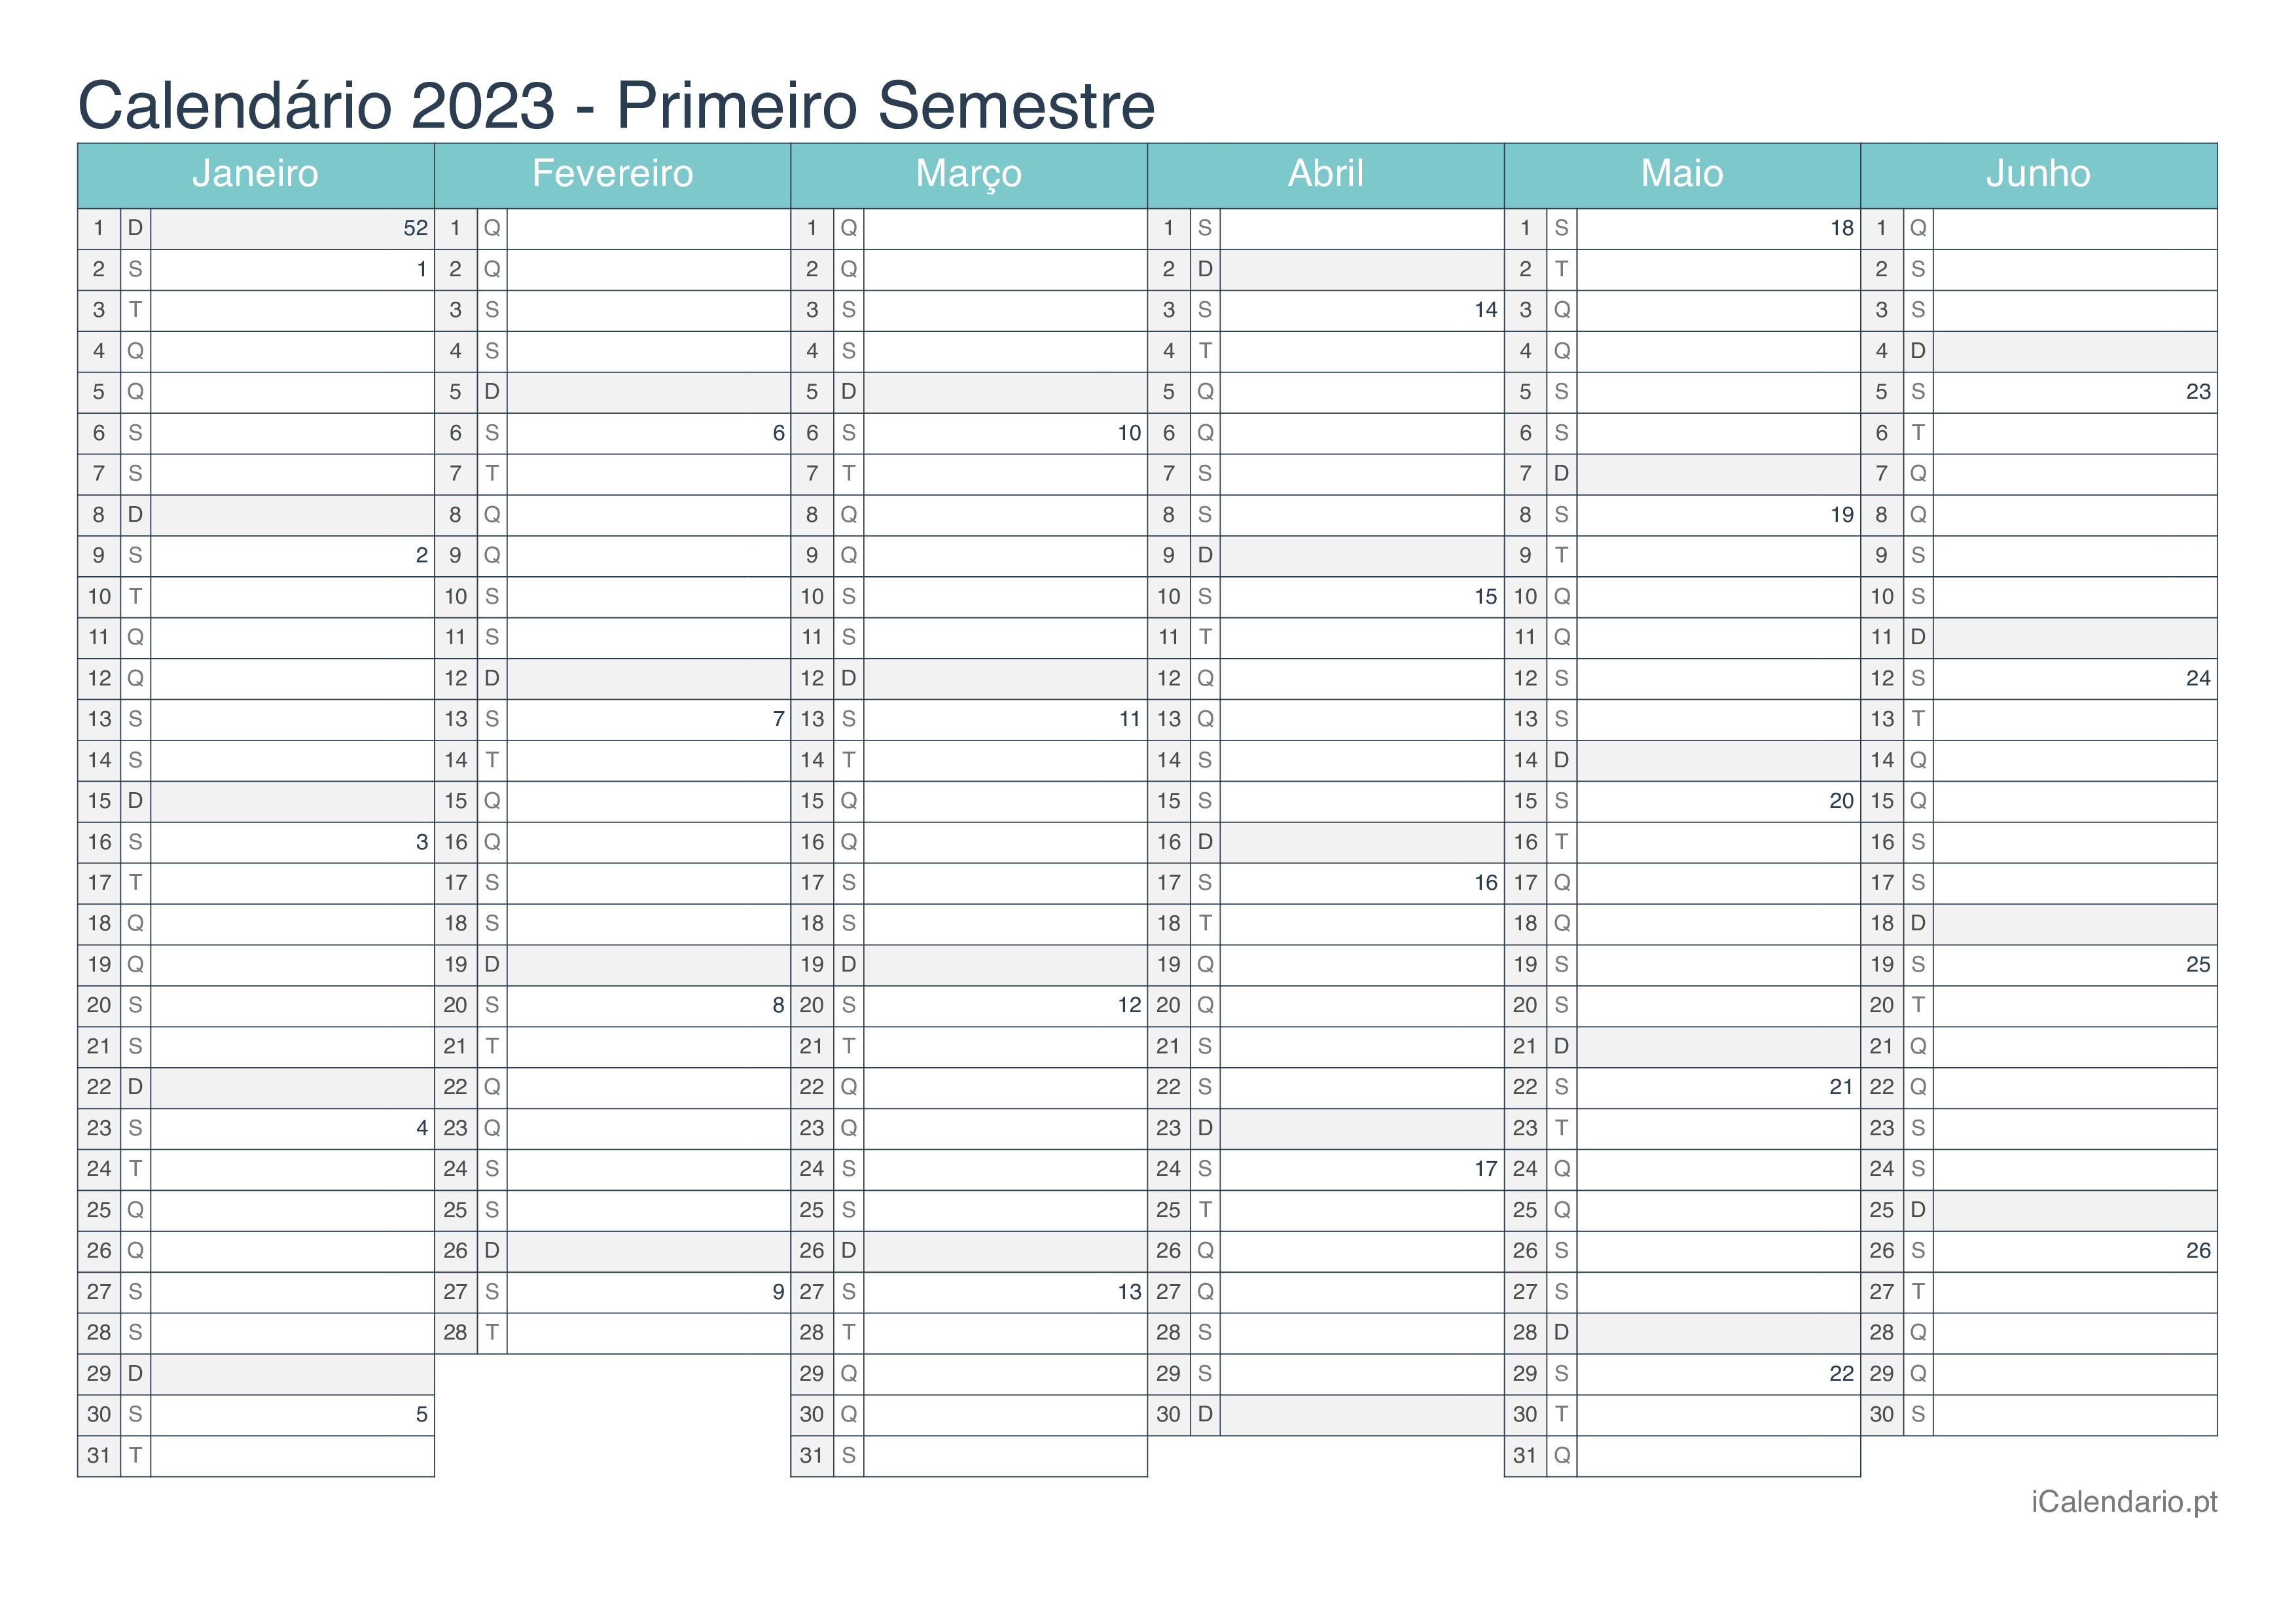 Calendário por semestre com números da semana 2023 - Turquesa